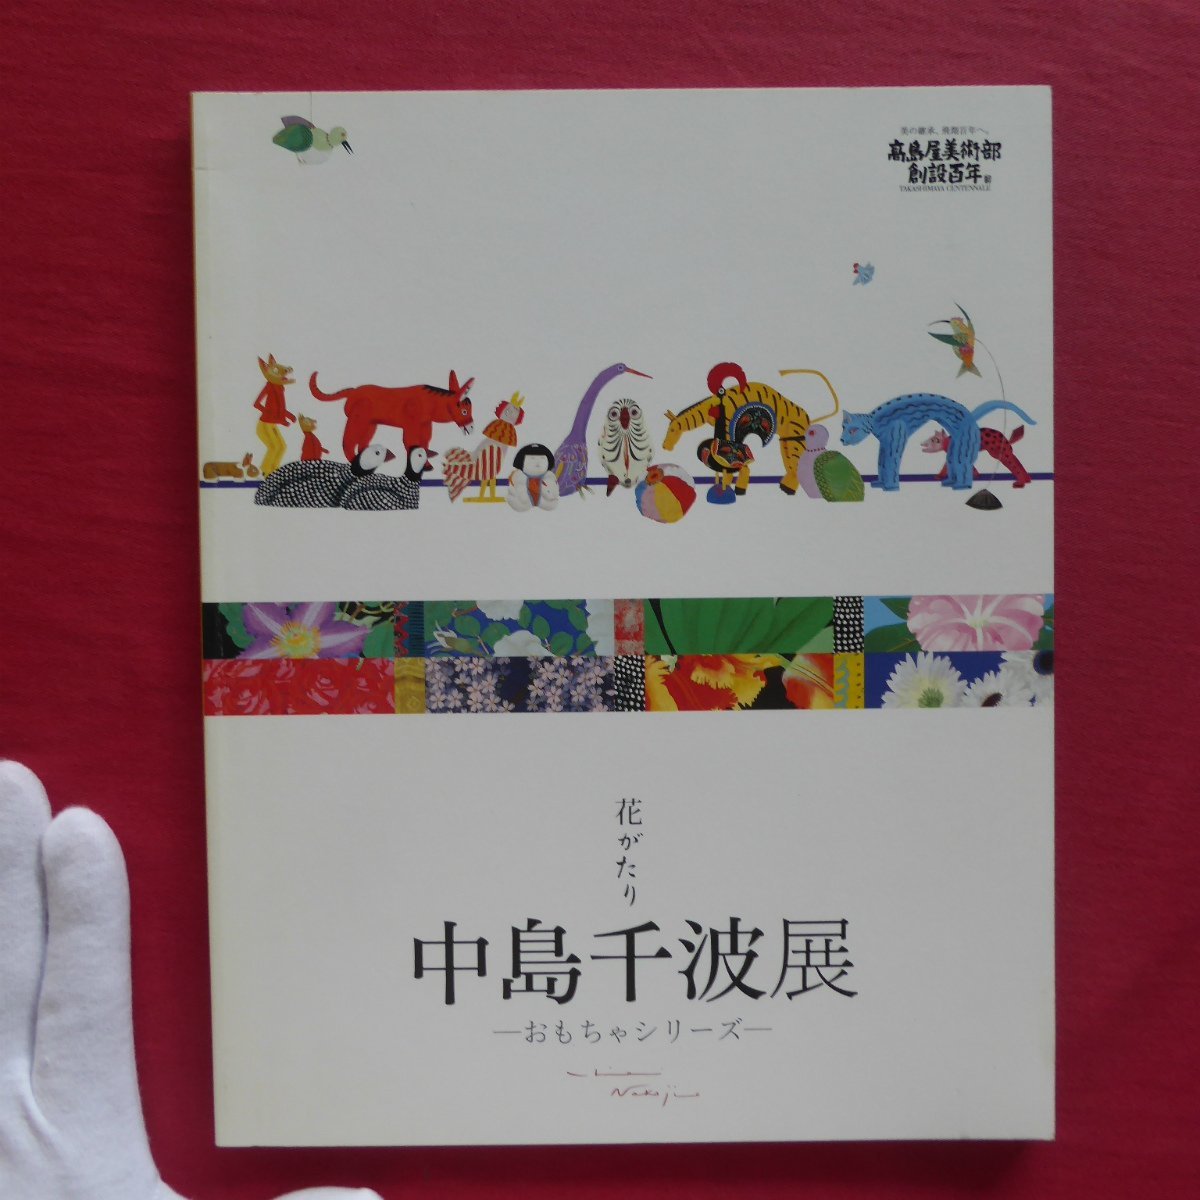 Catálogo p2 [Flower Story: Exposición Chinami Nakajima - Serie de juguetes - / 2008, takashimaya], Cuadro, Libro de arte, Recopilación, Catalogar